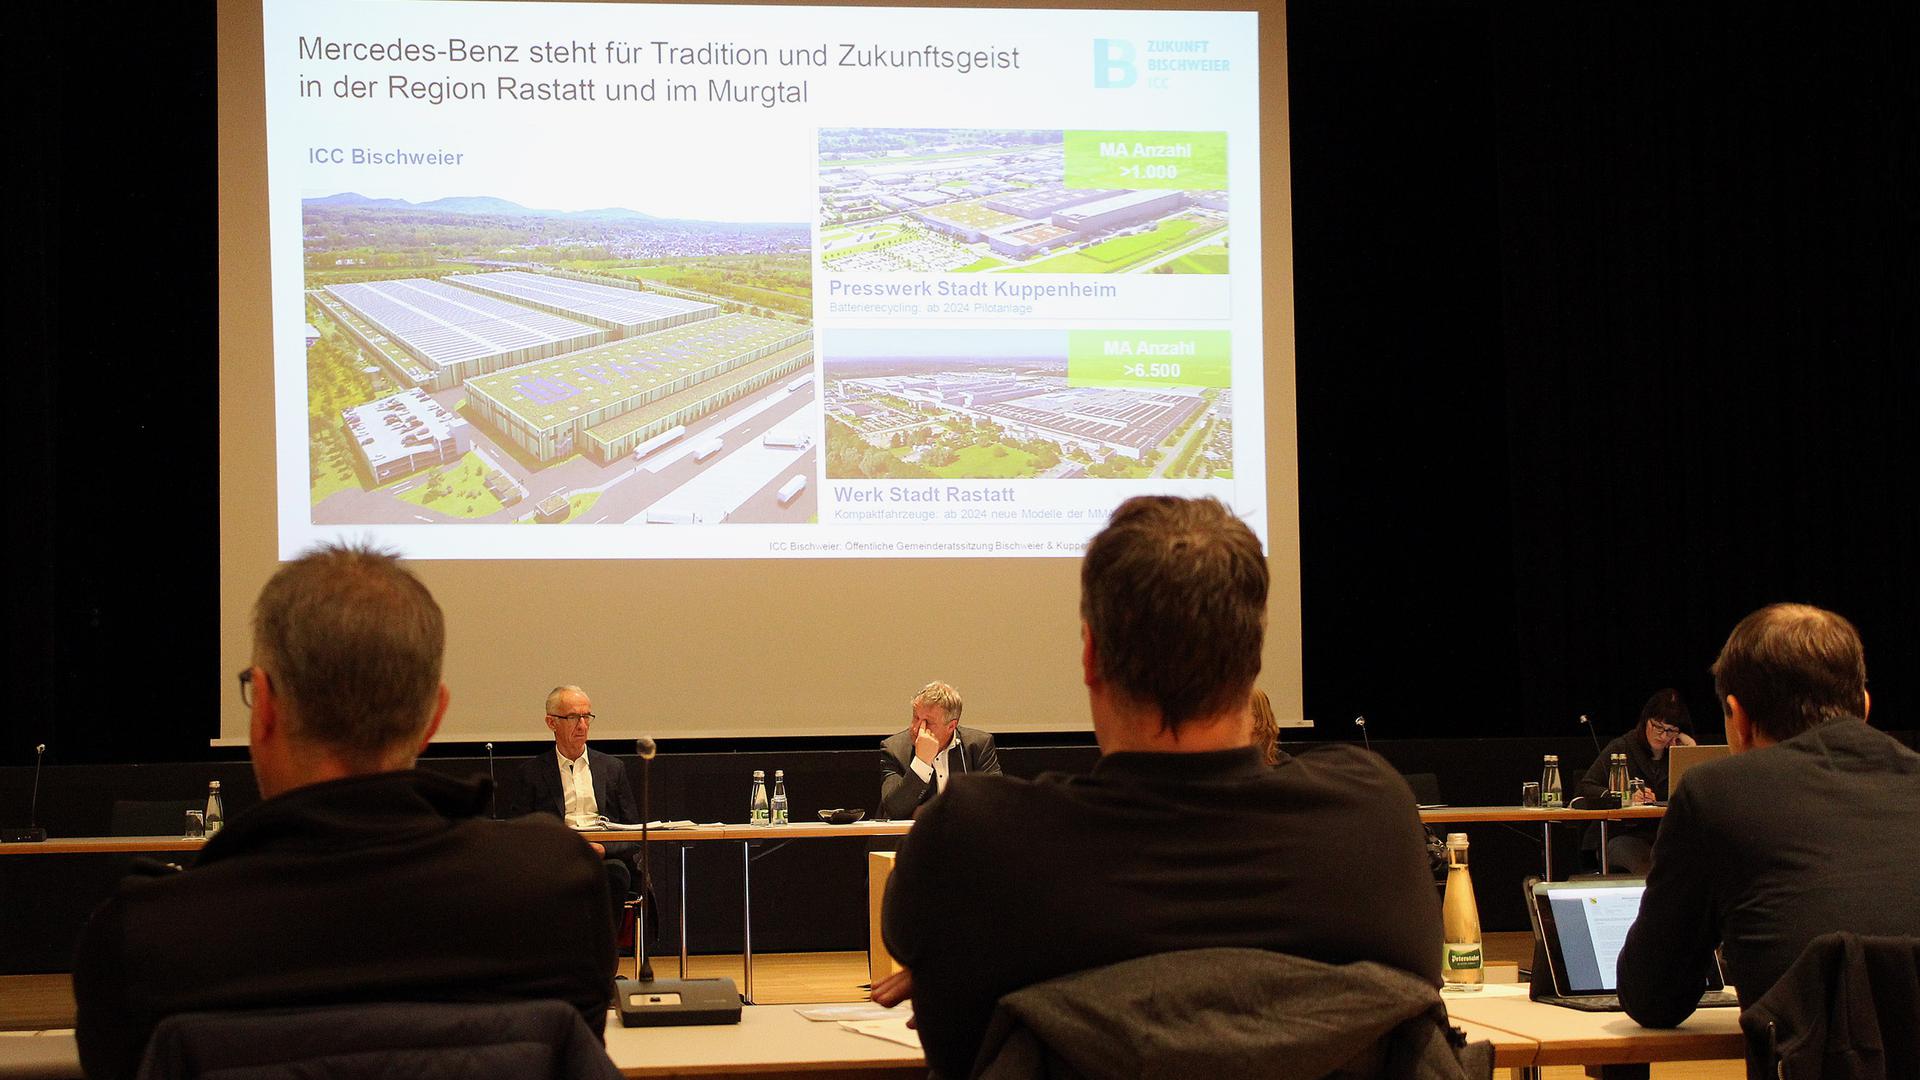 Die Gemeinderäte der Stadt Kuppenheim und der Gemeinde Bischweier lauschen in einer gemeinsamen Gemeinderatssitzung den Ausführungen der Projektträger zur geplante ICC-Ansiedelung auf dem früheren Kronospan-Gelände.